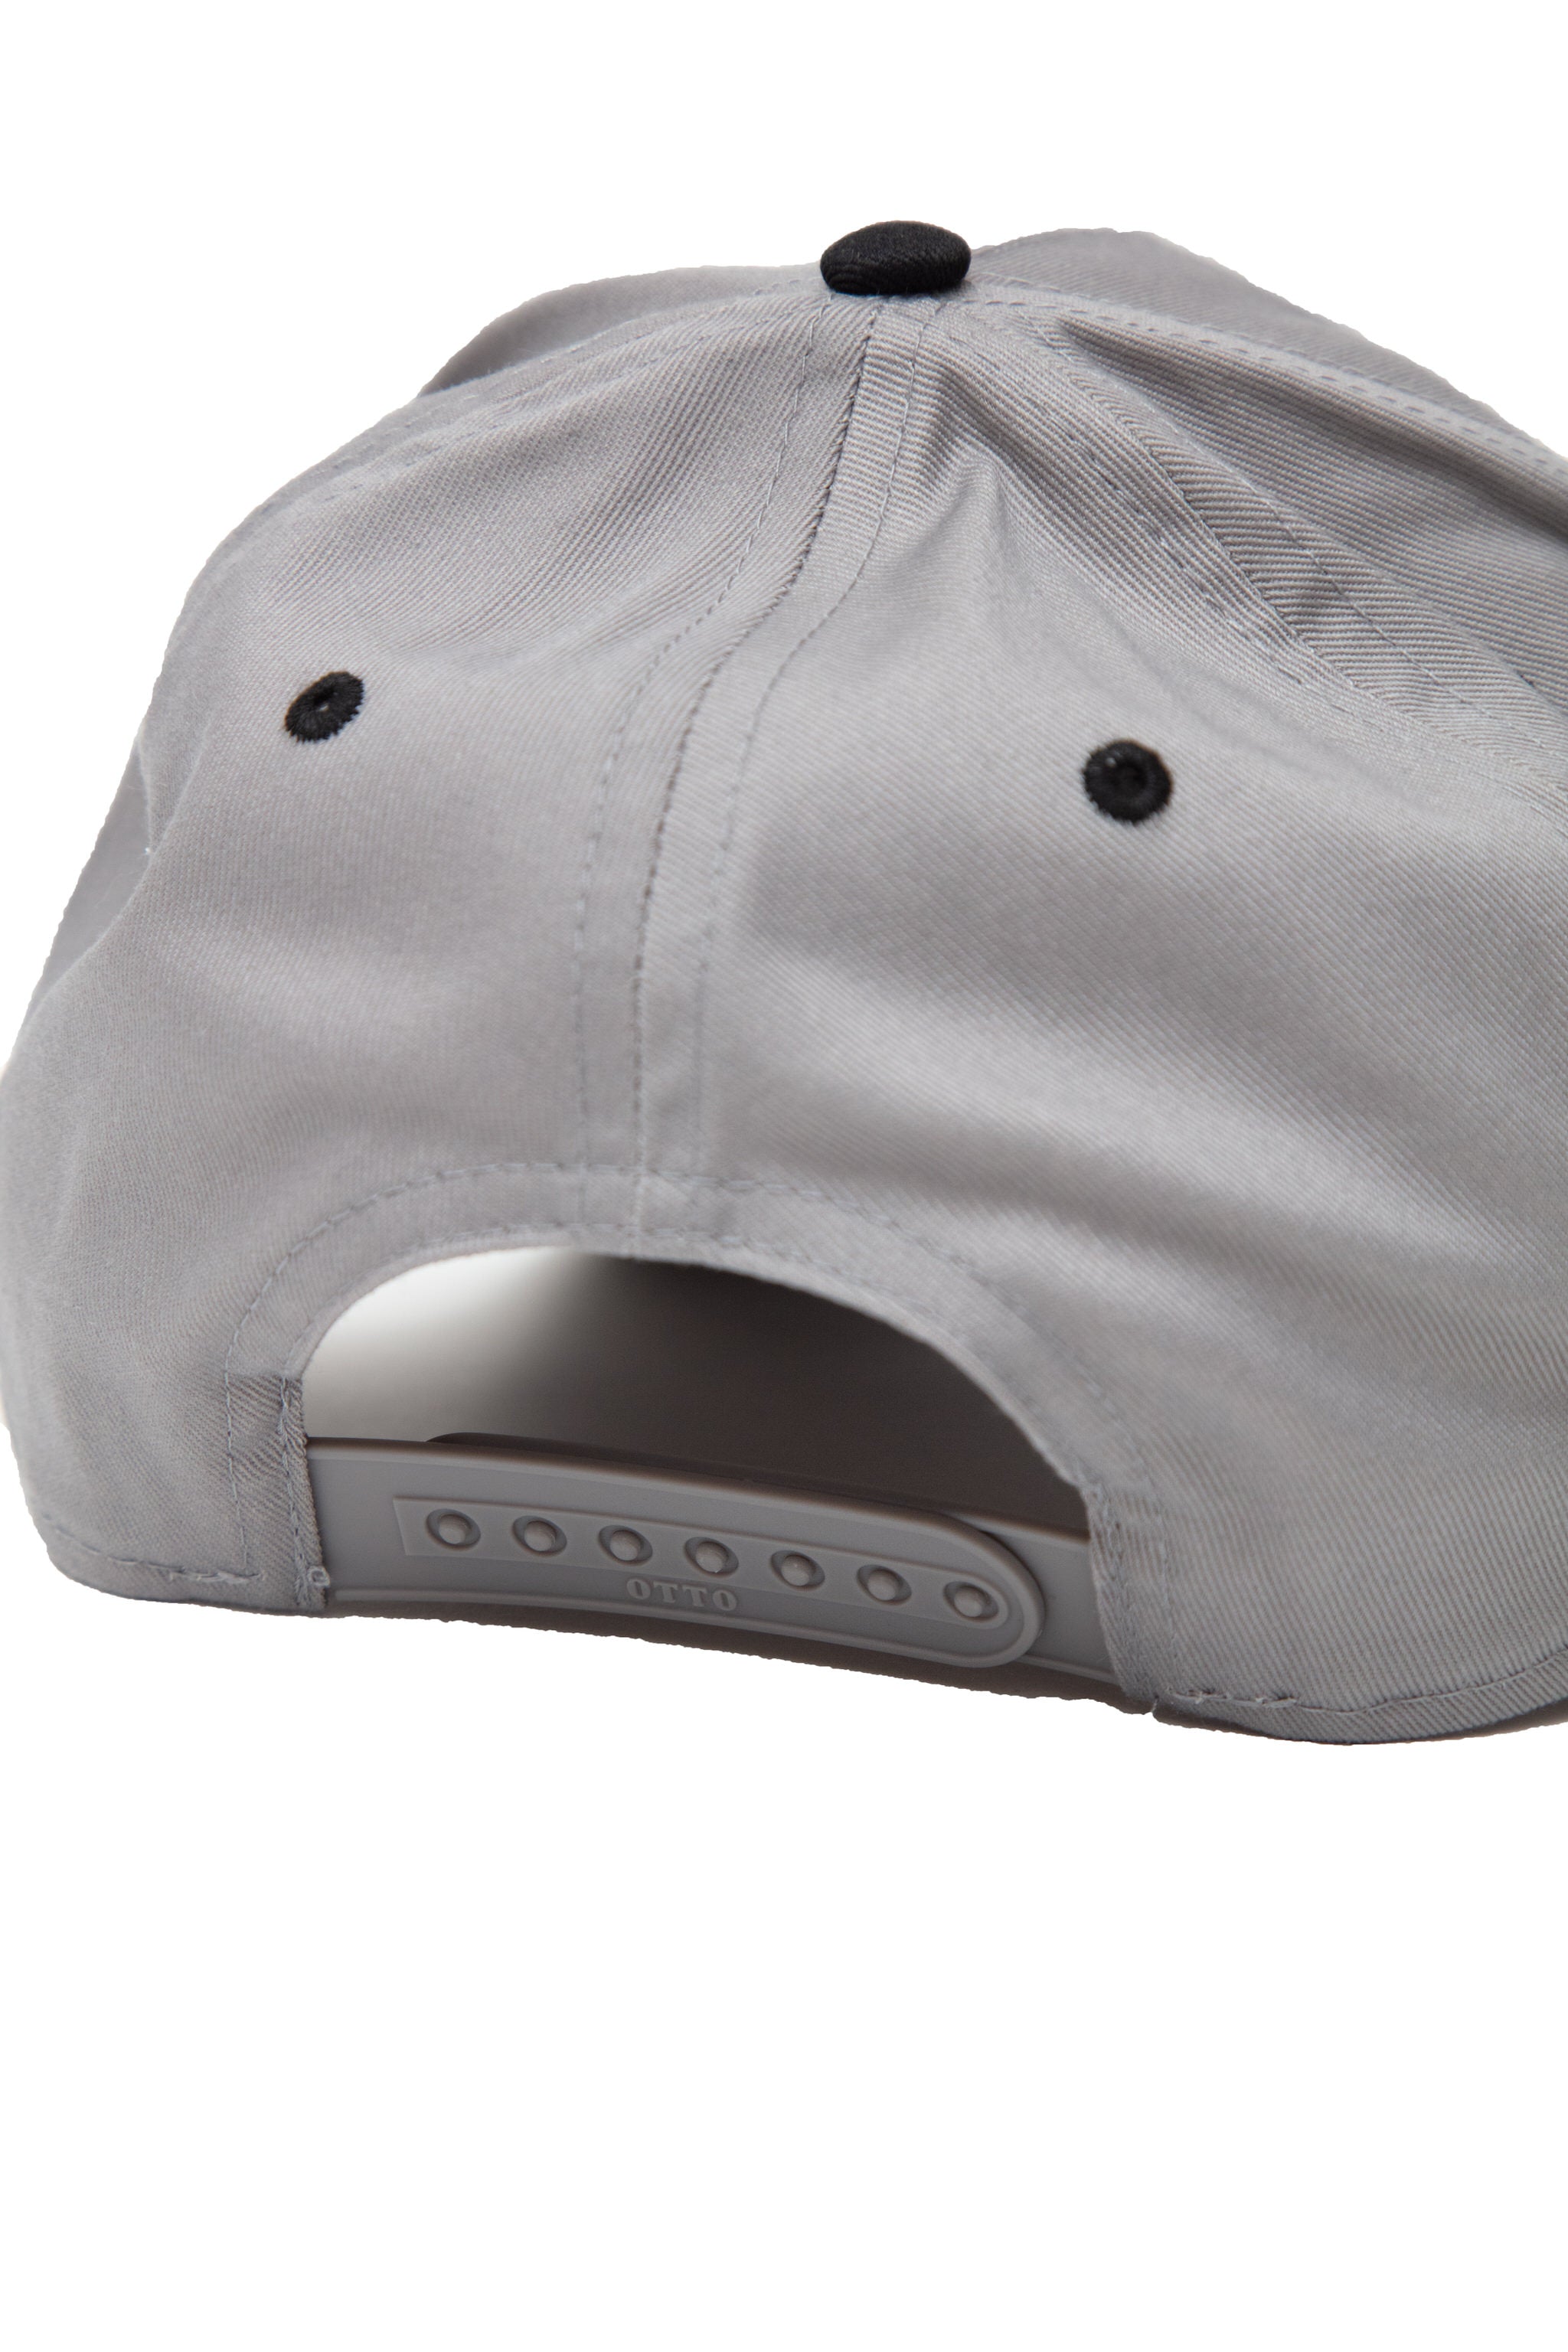 Weight Smashers - 5-Panel Snapback Hat (Grey/Black)